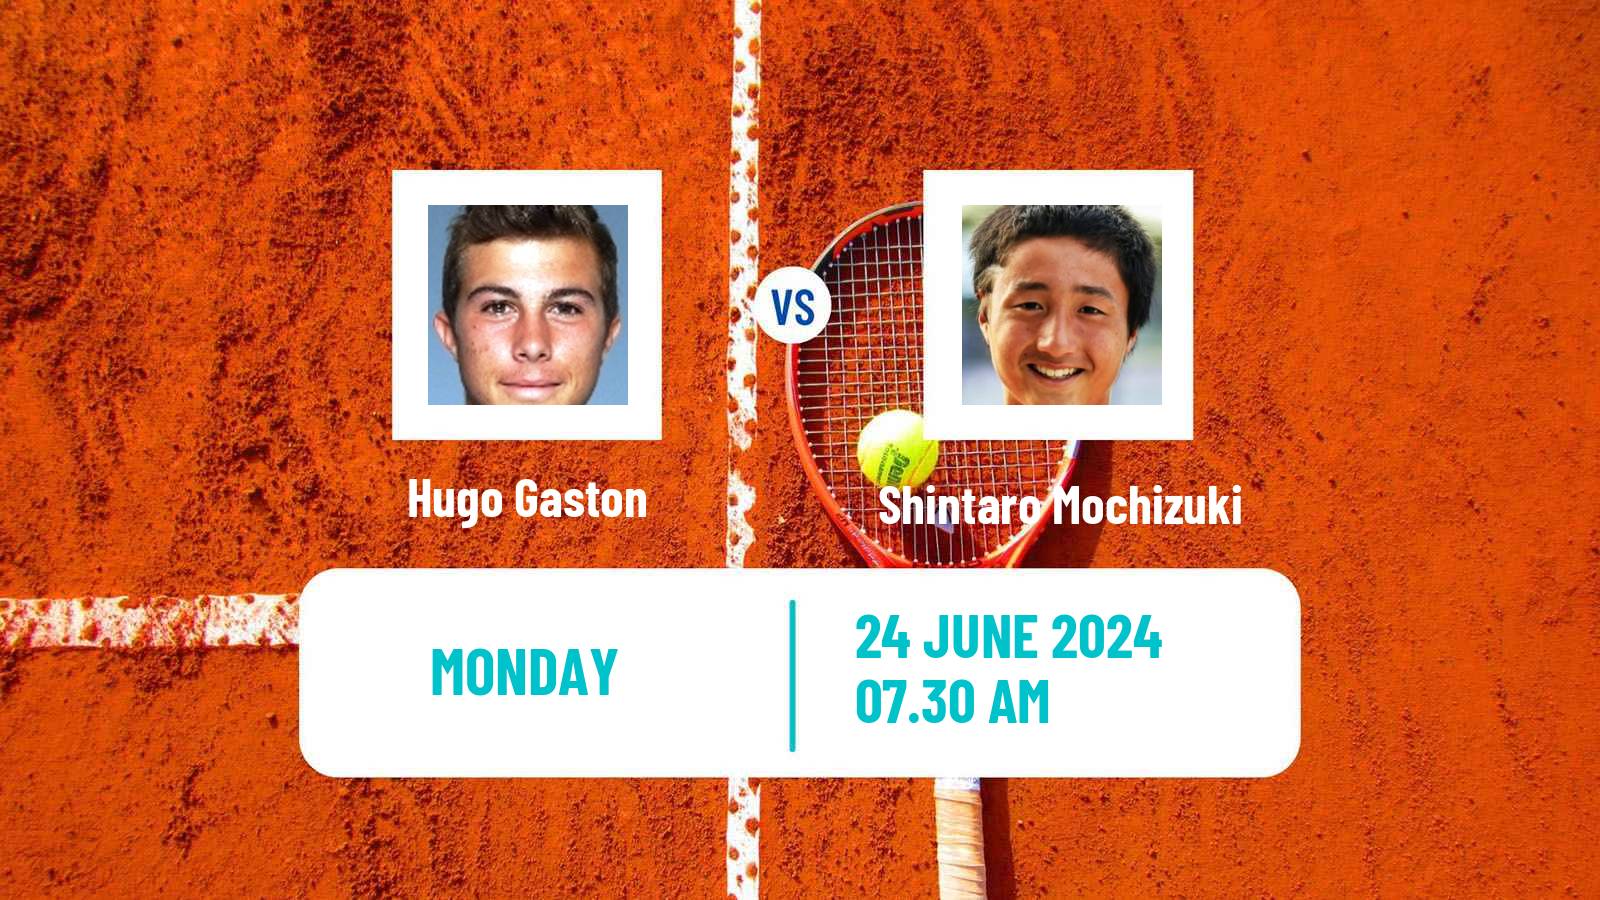 Tennis ATP Wimbledon Hugo Gaston - Shintaro Mochizuki